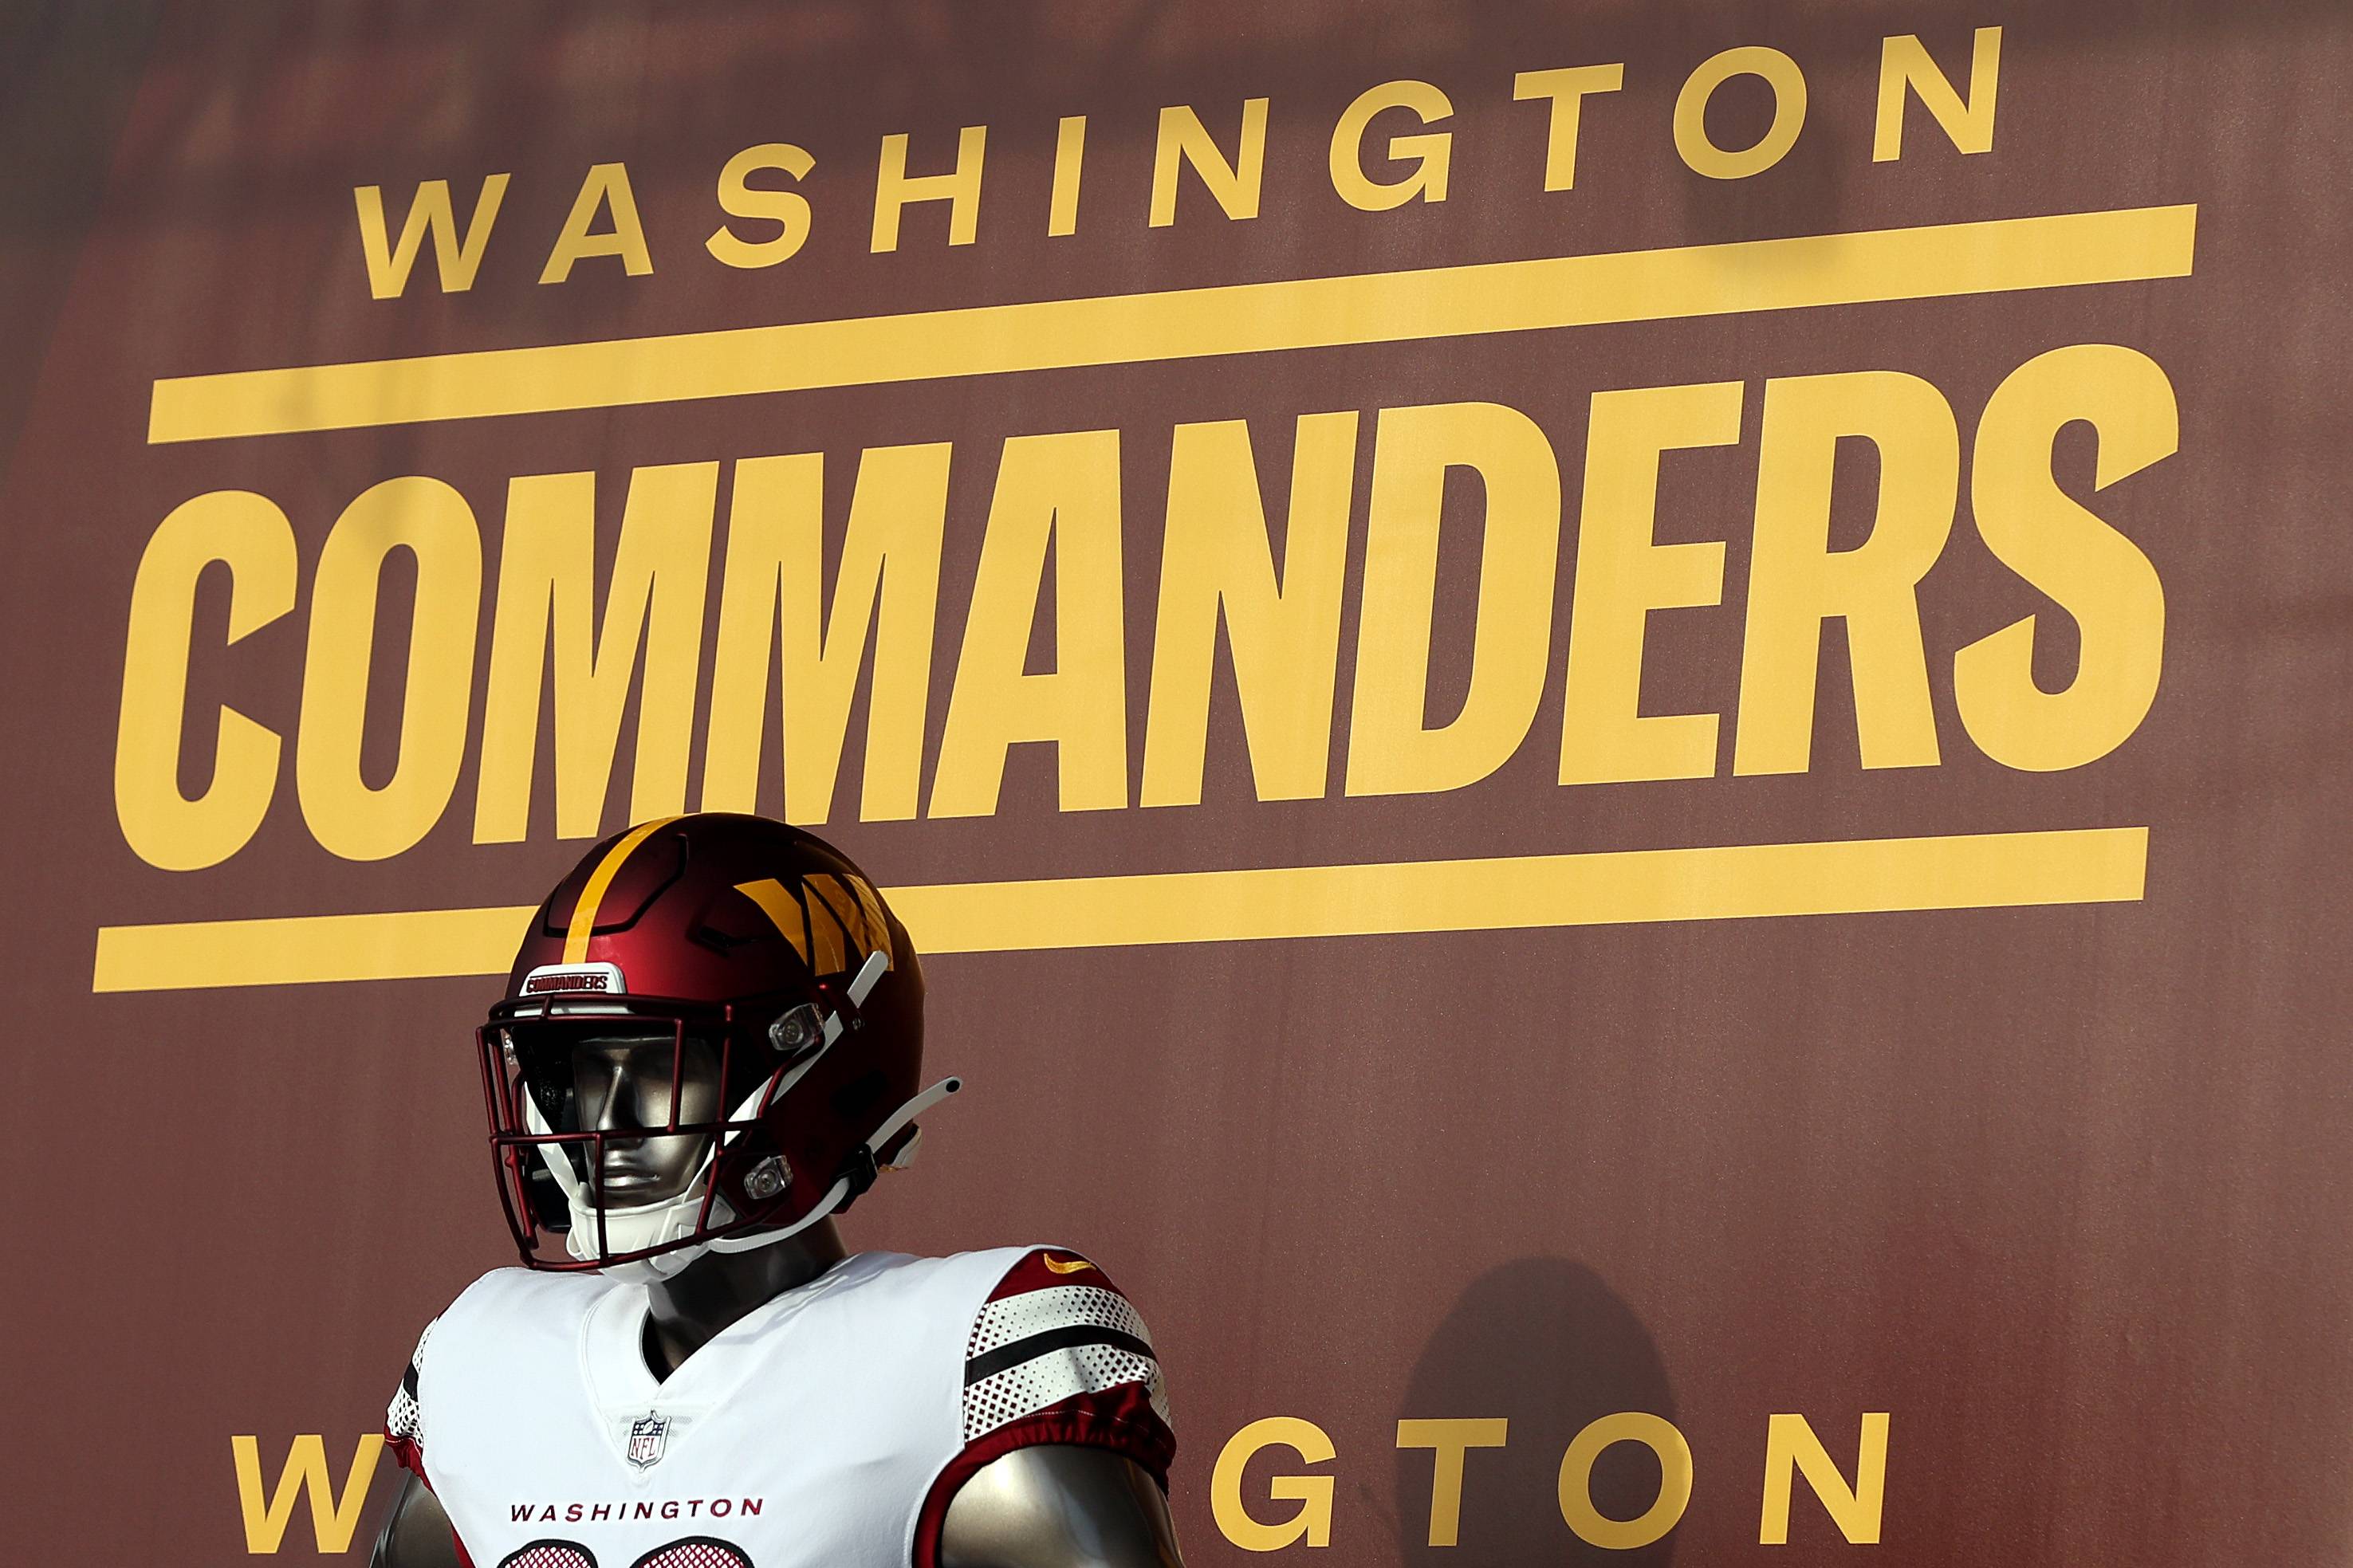 Washington Football Team announces new name 